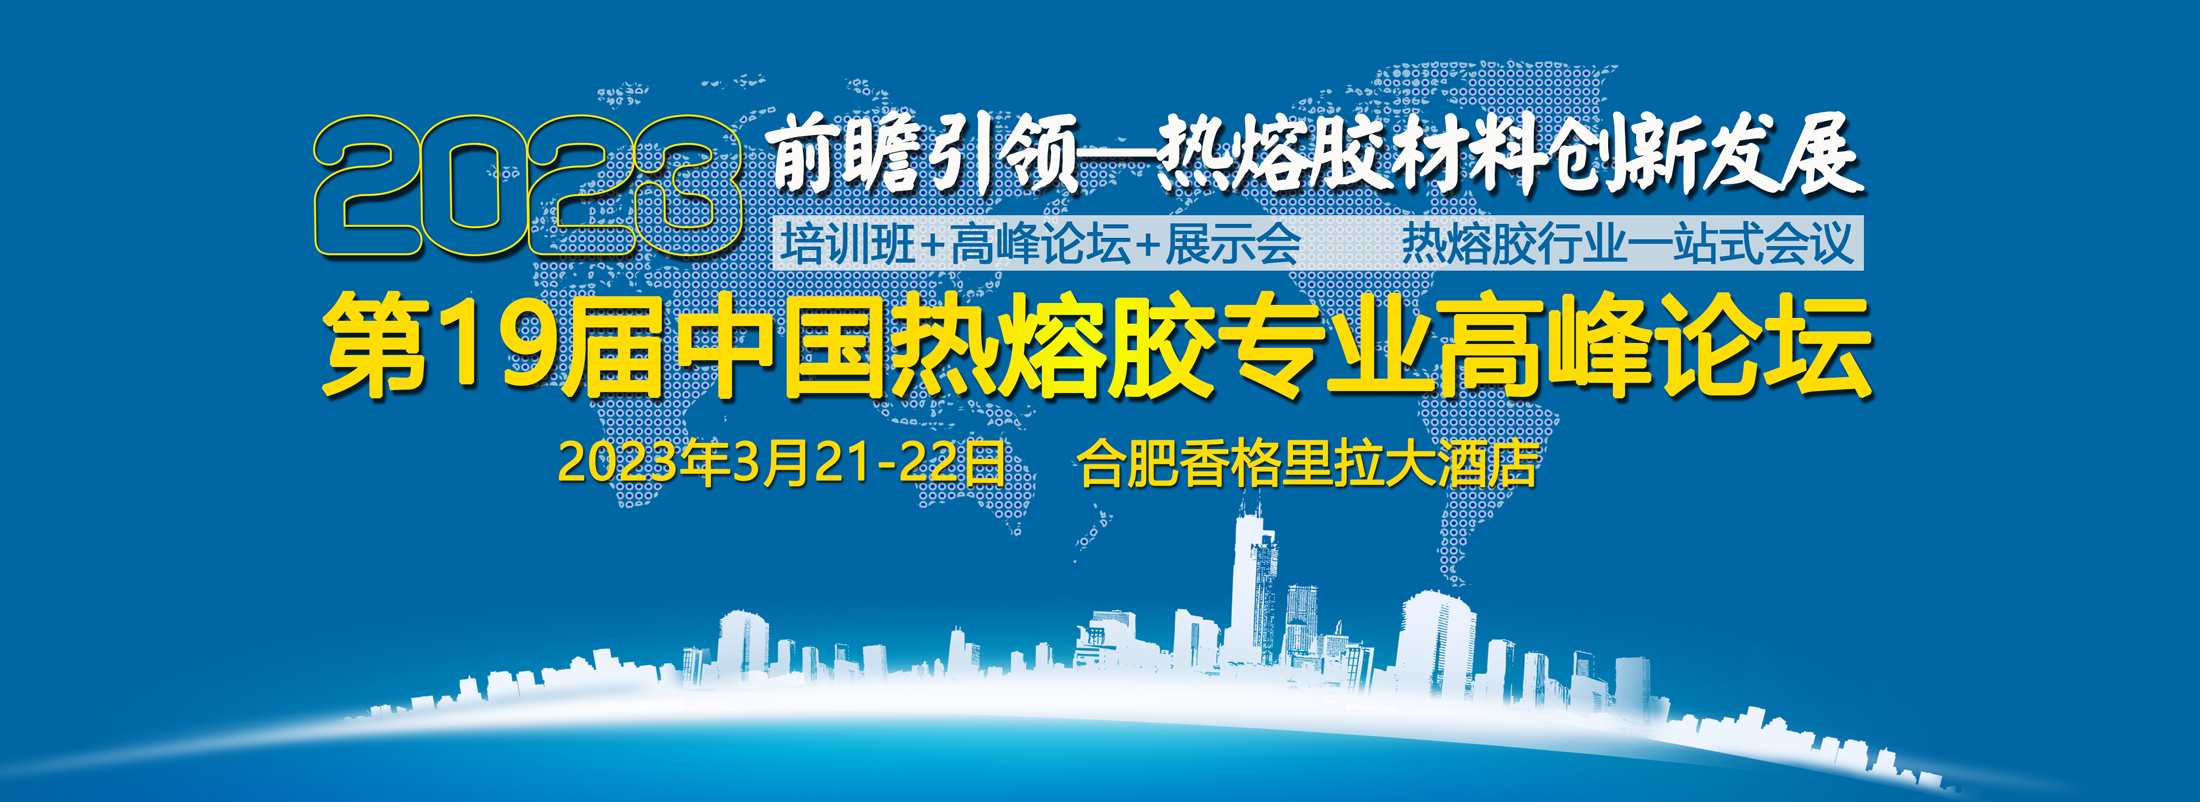 关于召开2023年(第19届)中国热熔胶专业高峰论坛